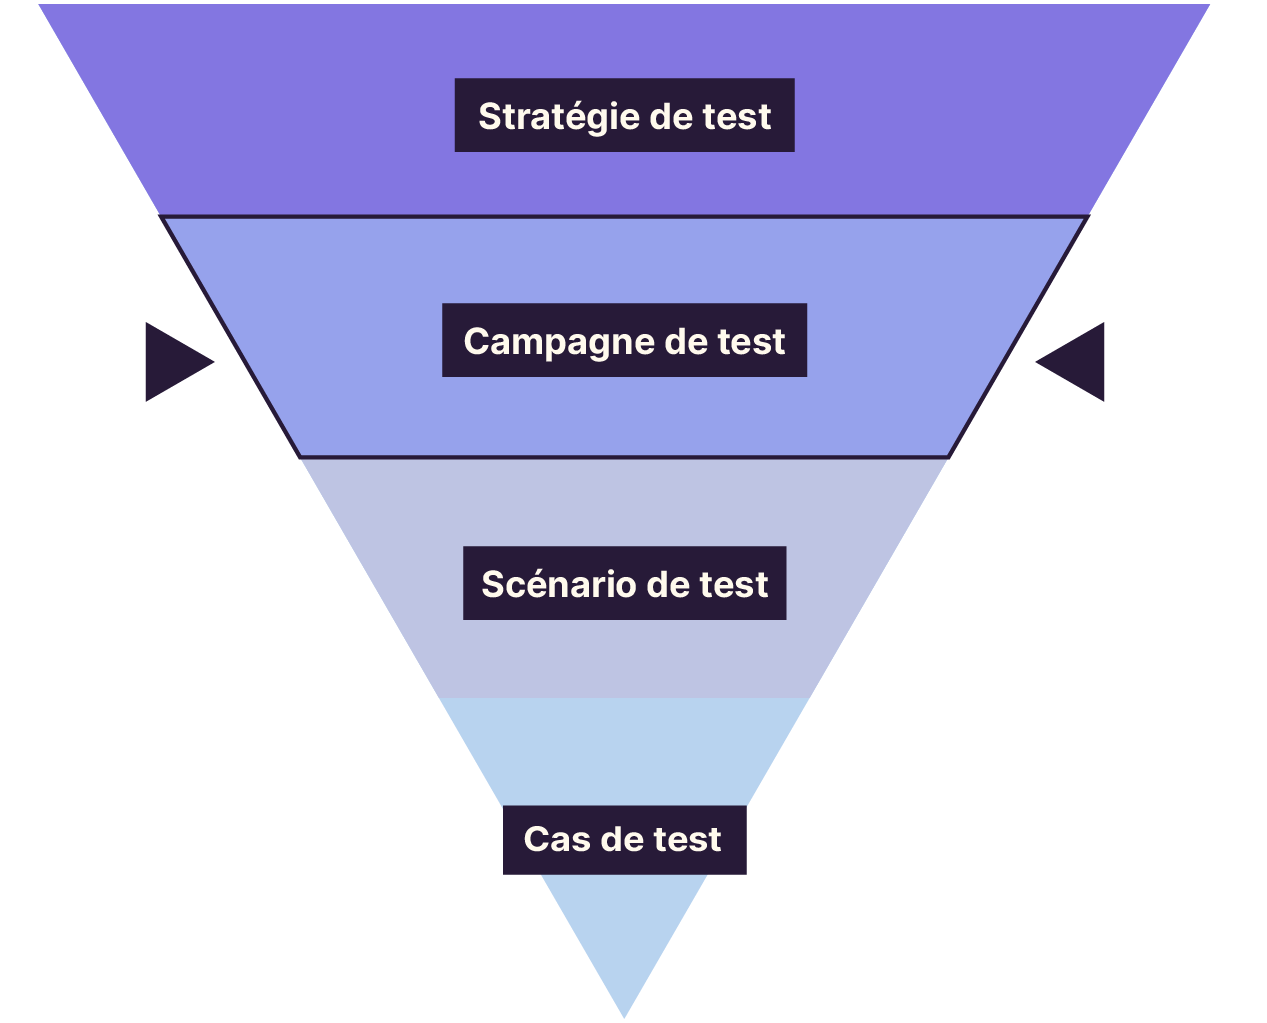 La pyramide du niveau le plus bas au plus élevé : stratégie de test, campagne de test, scénario de test, cas de test. L’étage “campagne de test” est mis en avant.